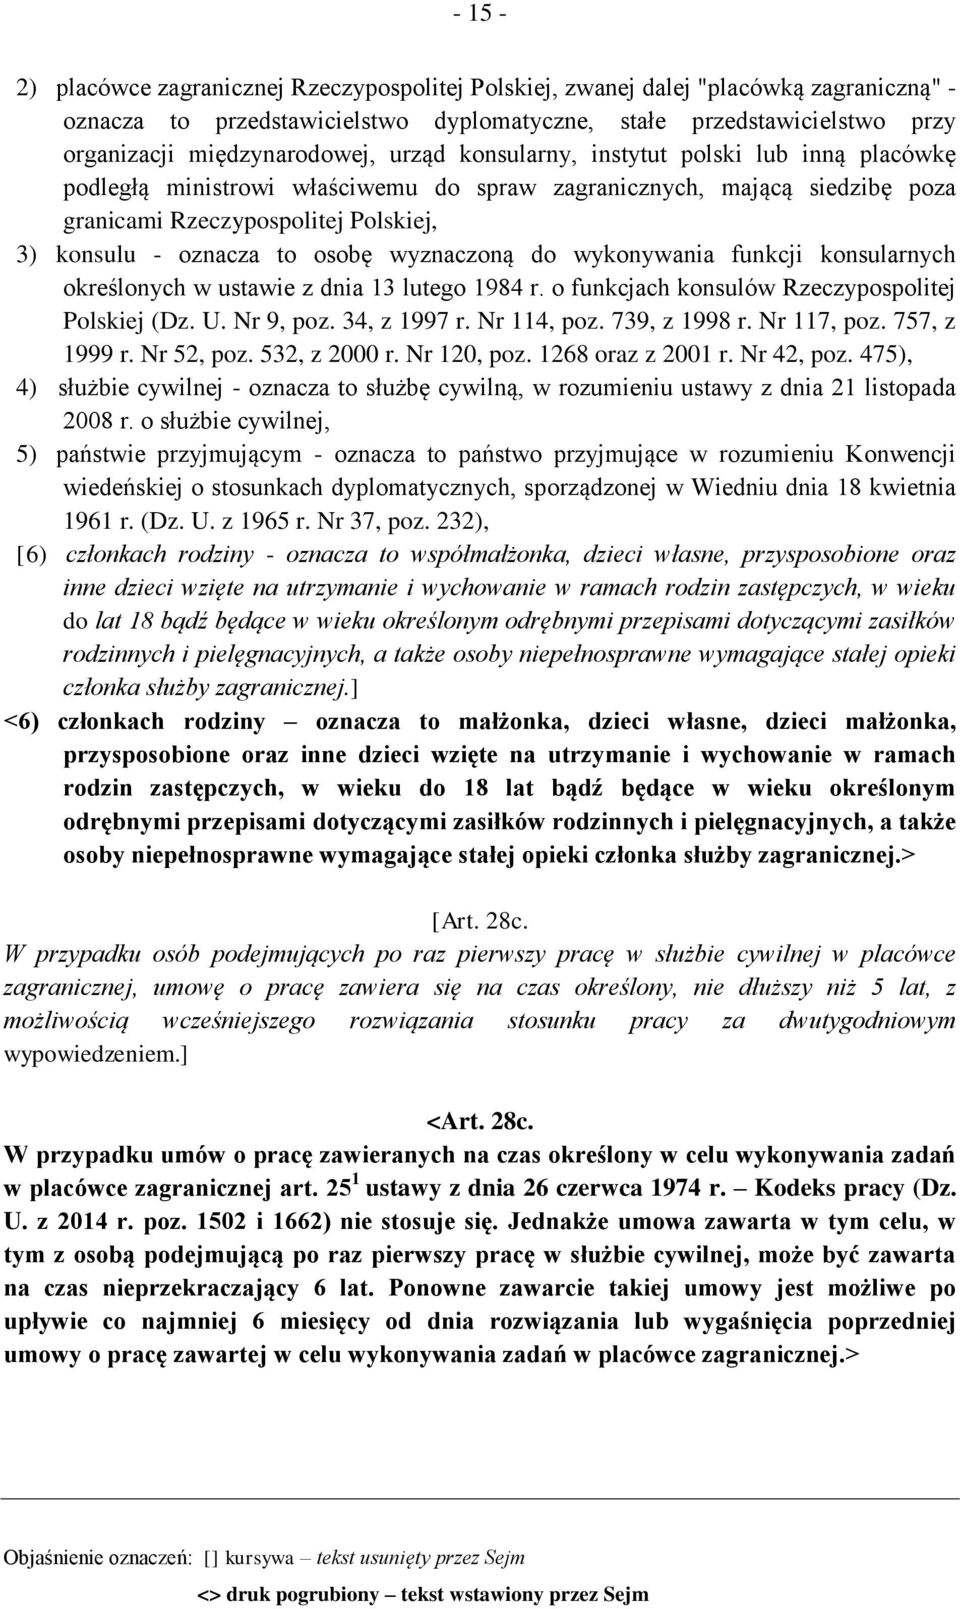 wyznaczoną do wykonywania funkcji konsularnych określonych w ustawie z dnia 13 lutego 1984 r. o funkcjach konsulów Rzeczypospolitej Polskiej (Dz. U. Nr 9, poz. 34, z 1997 r. Nr 114, poz.